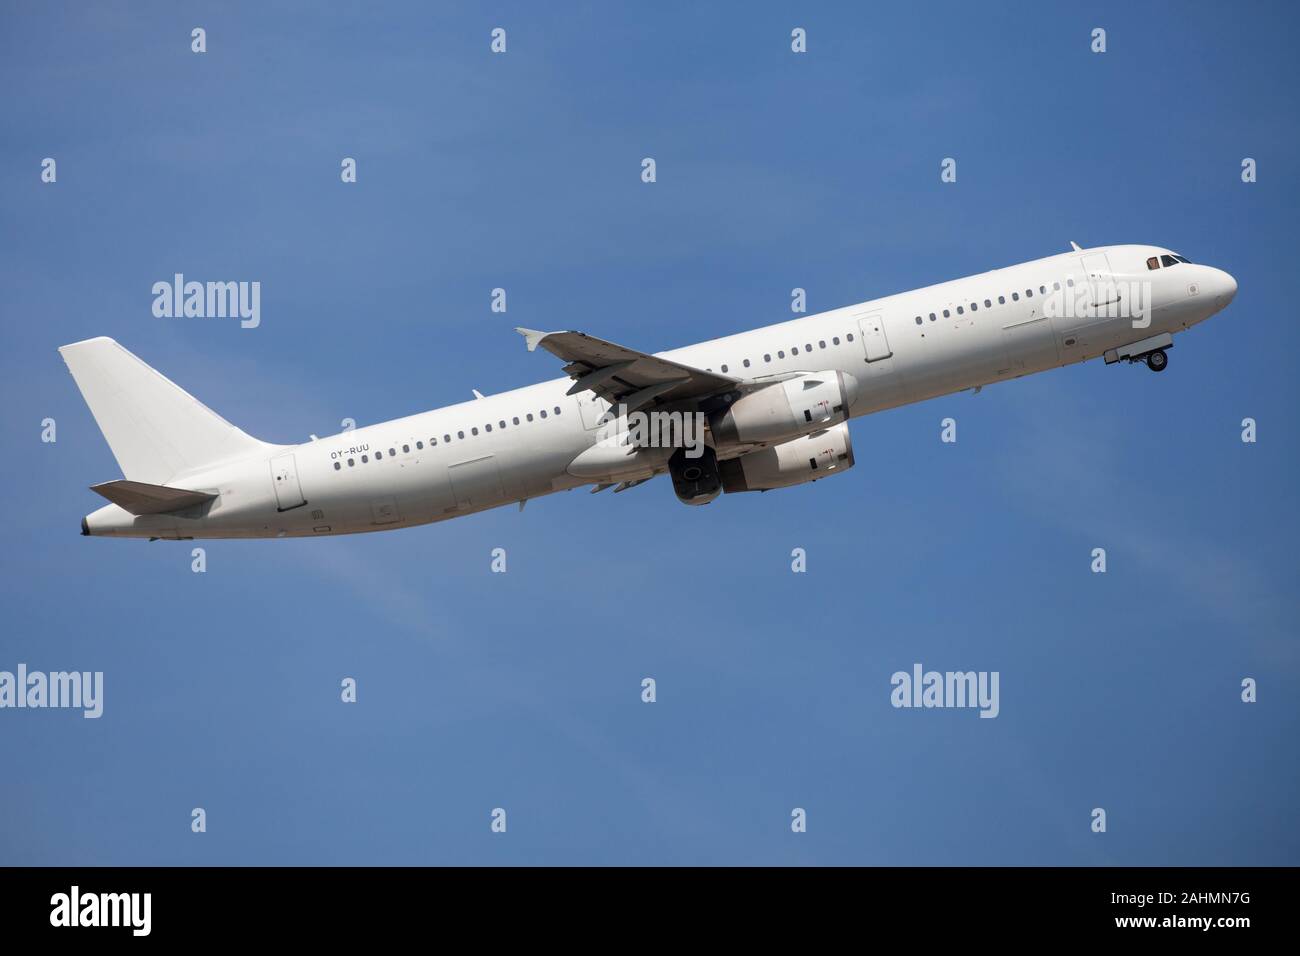 Barcelona, España - 23 de agosto de 2019: Transporte aéreo danés Airbus A321 sin librea de despegar del aeropuerto de El Prat en Barcelona, España. Foto de stock